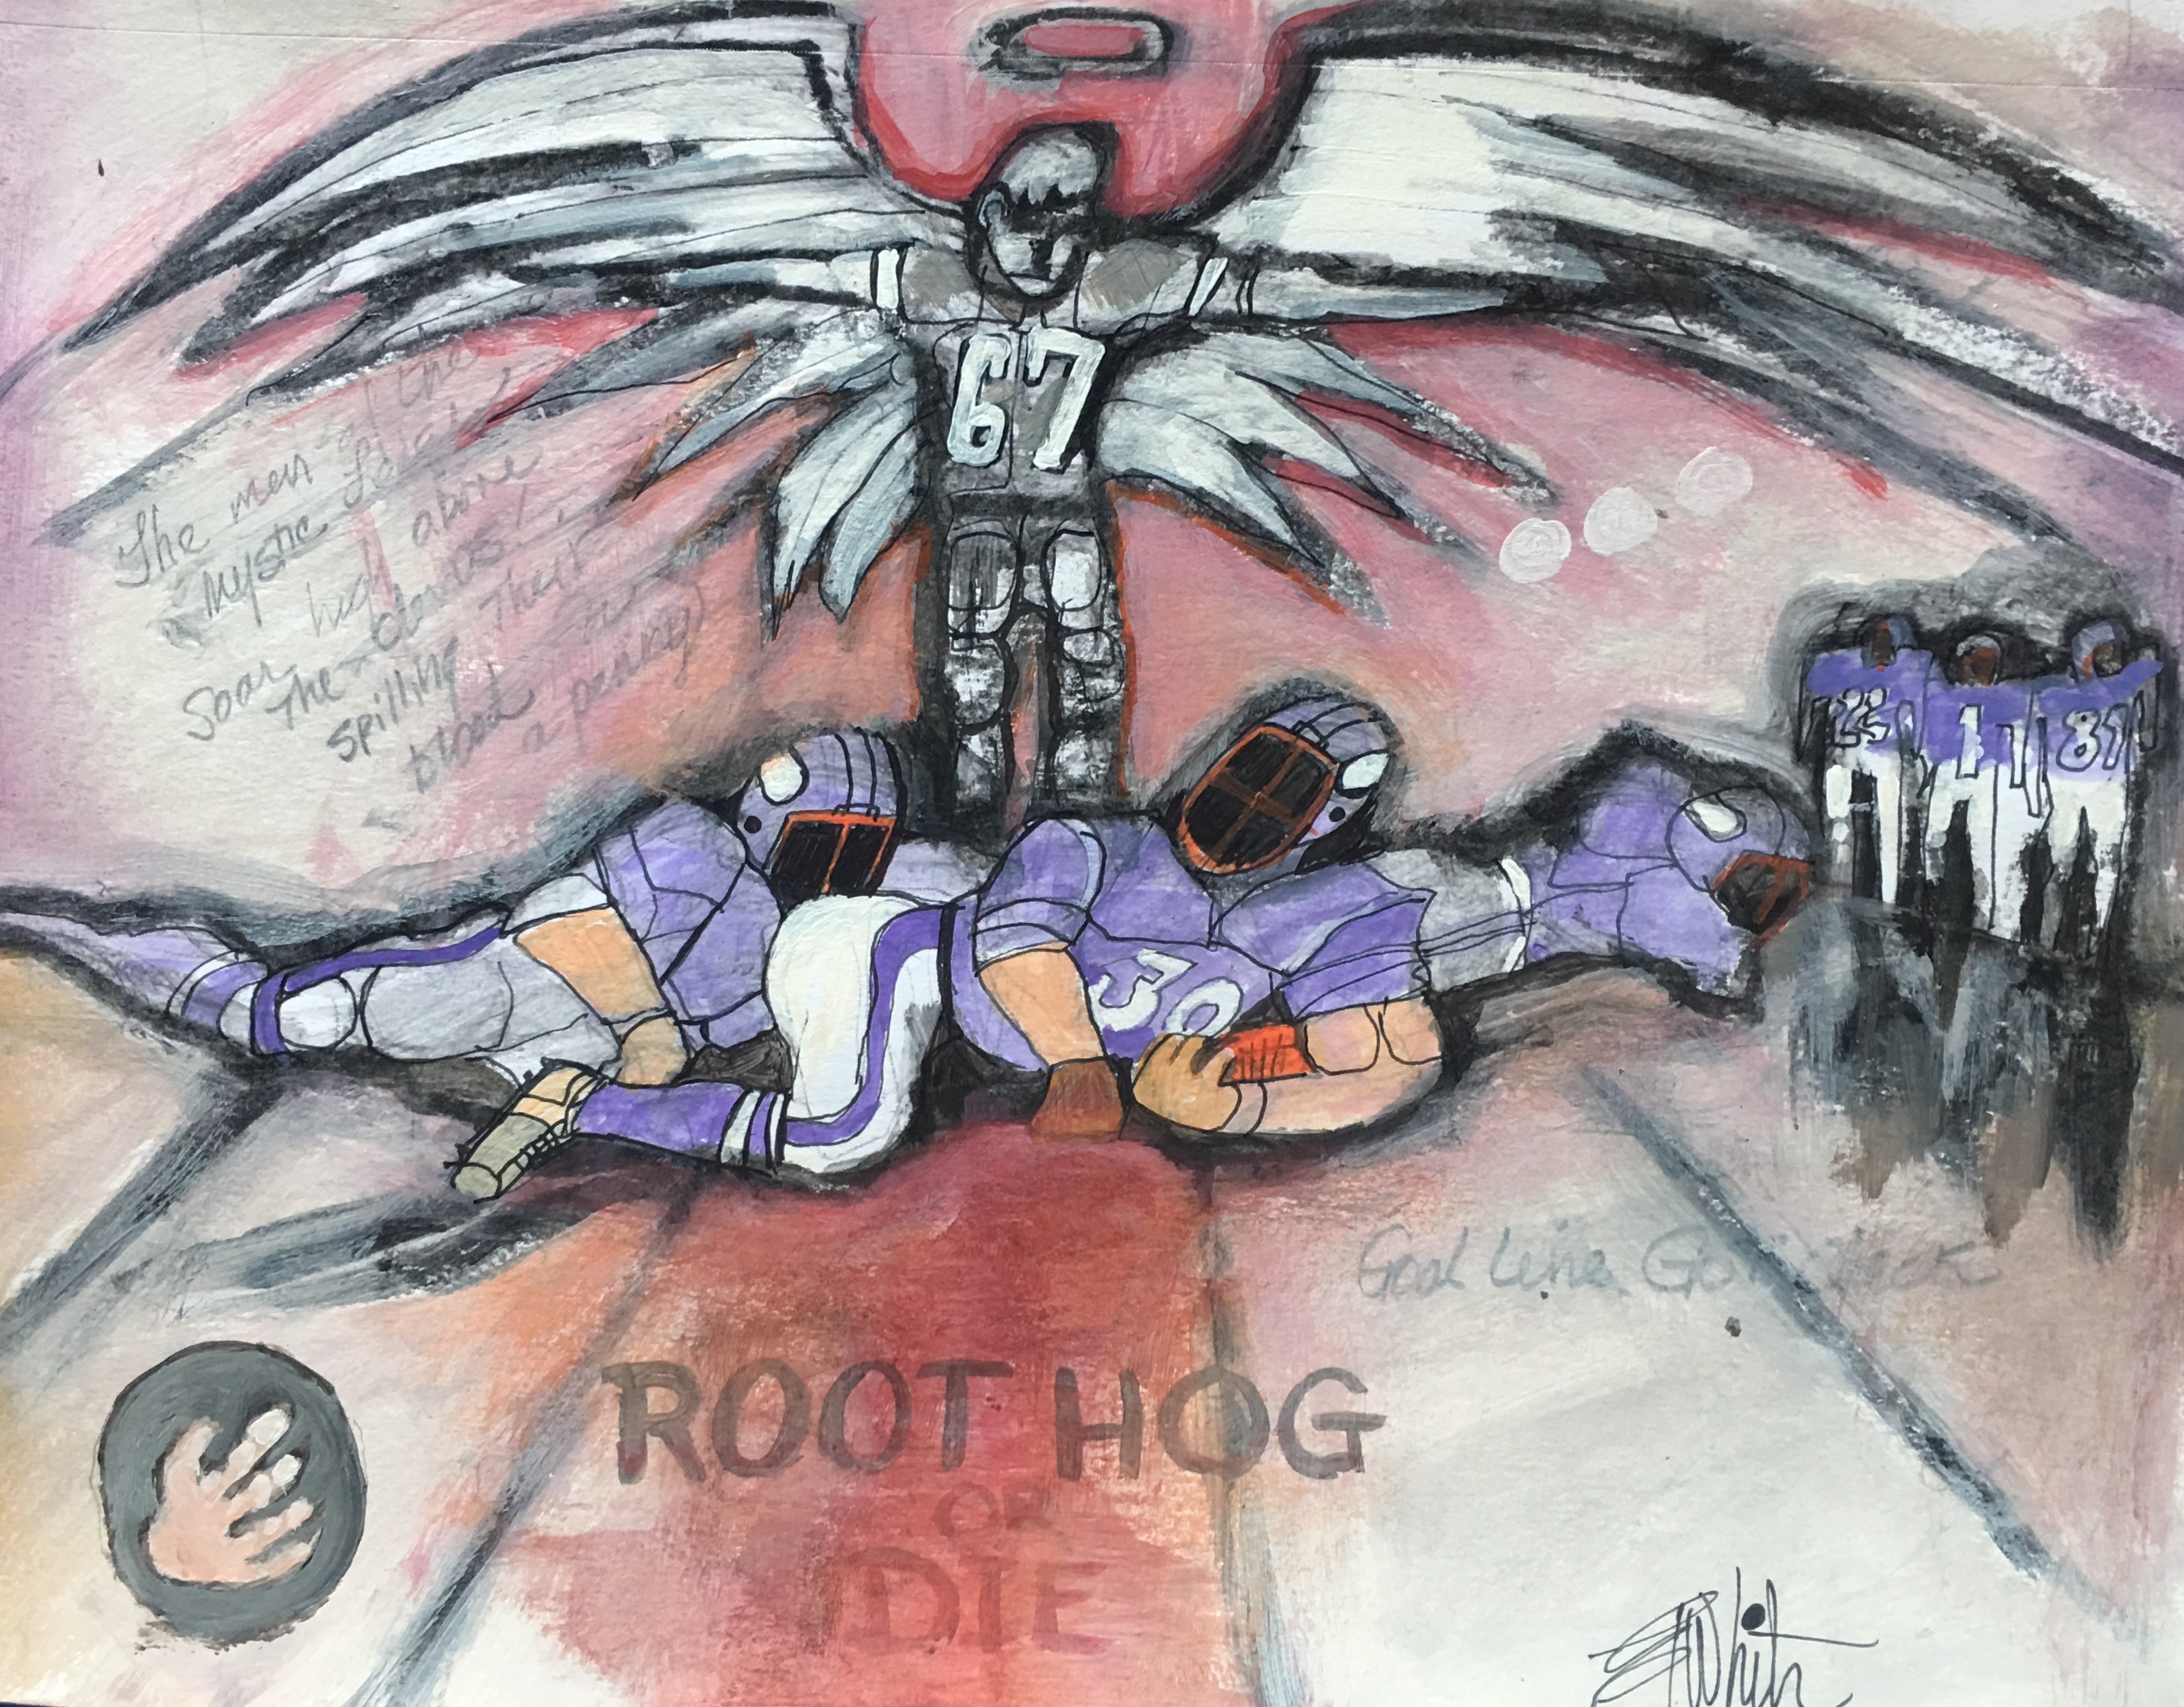 Root Hog or Die